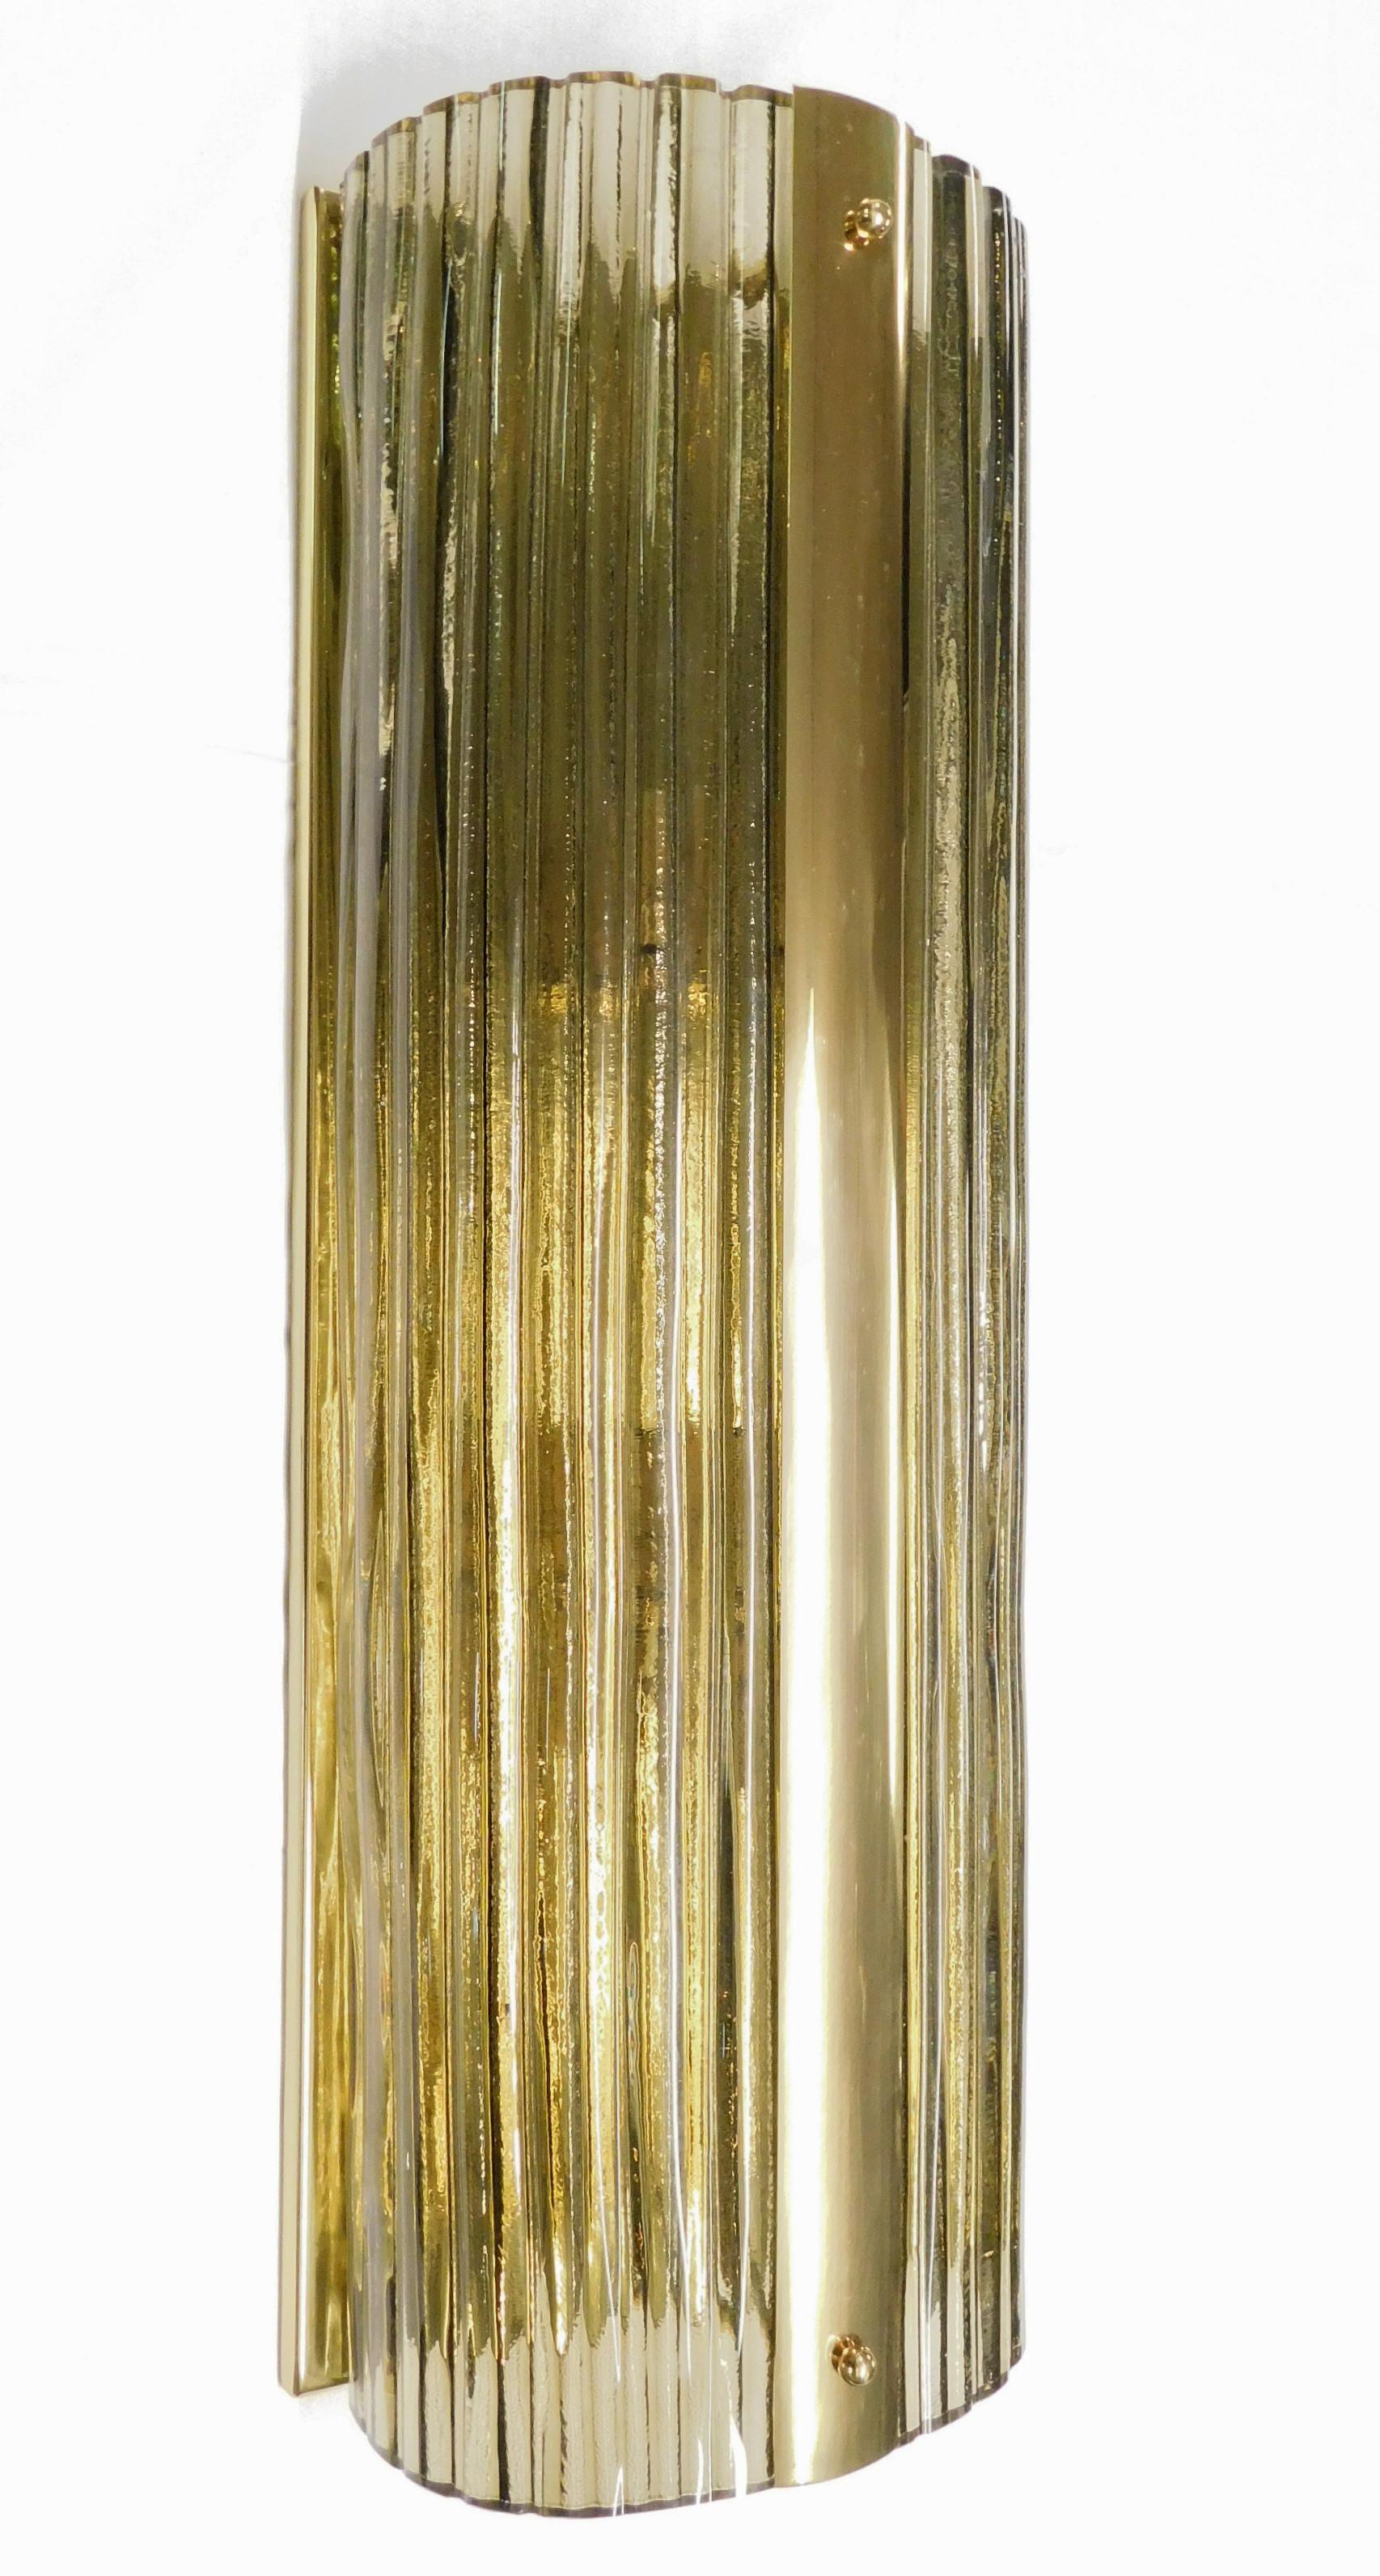 Italienische Wandleuchten aus rauchigem Murano-Glas, mundgeblasen in einem komplizierten, gebogenen Muster, montiert auf polierten Messingrahmen / Entworfen von Fabio Bergomi für FABIO LTD / Hergestellt in Italien
3 Leuchten / Typ E12 oder E14 / je